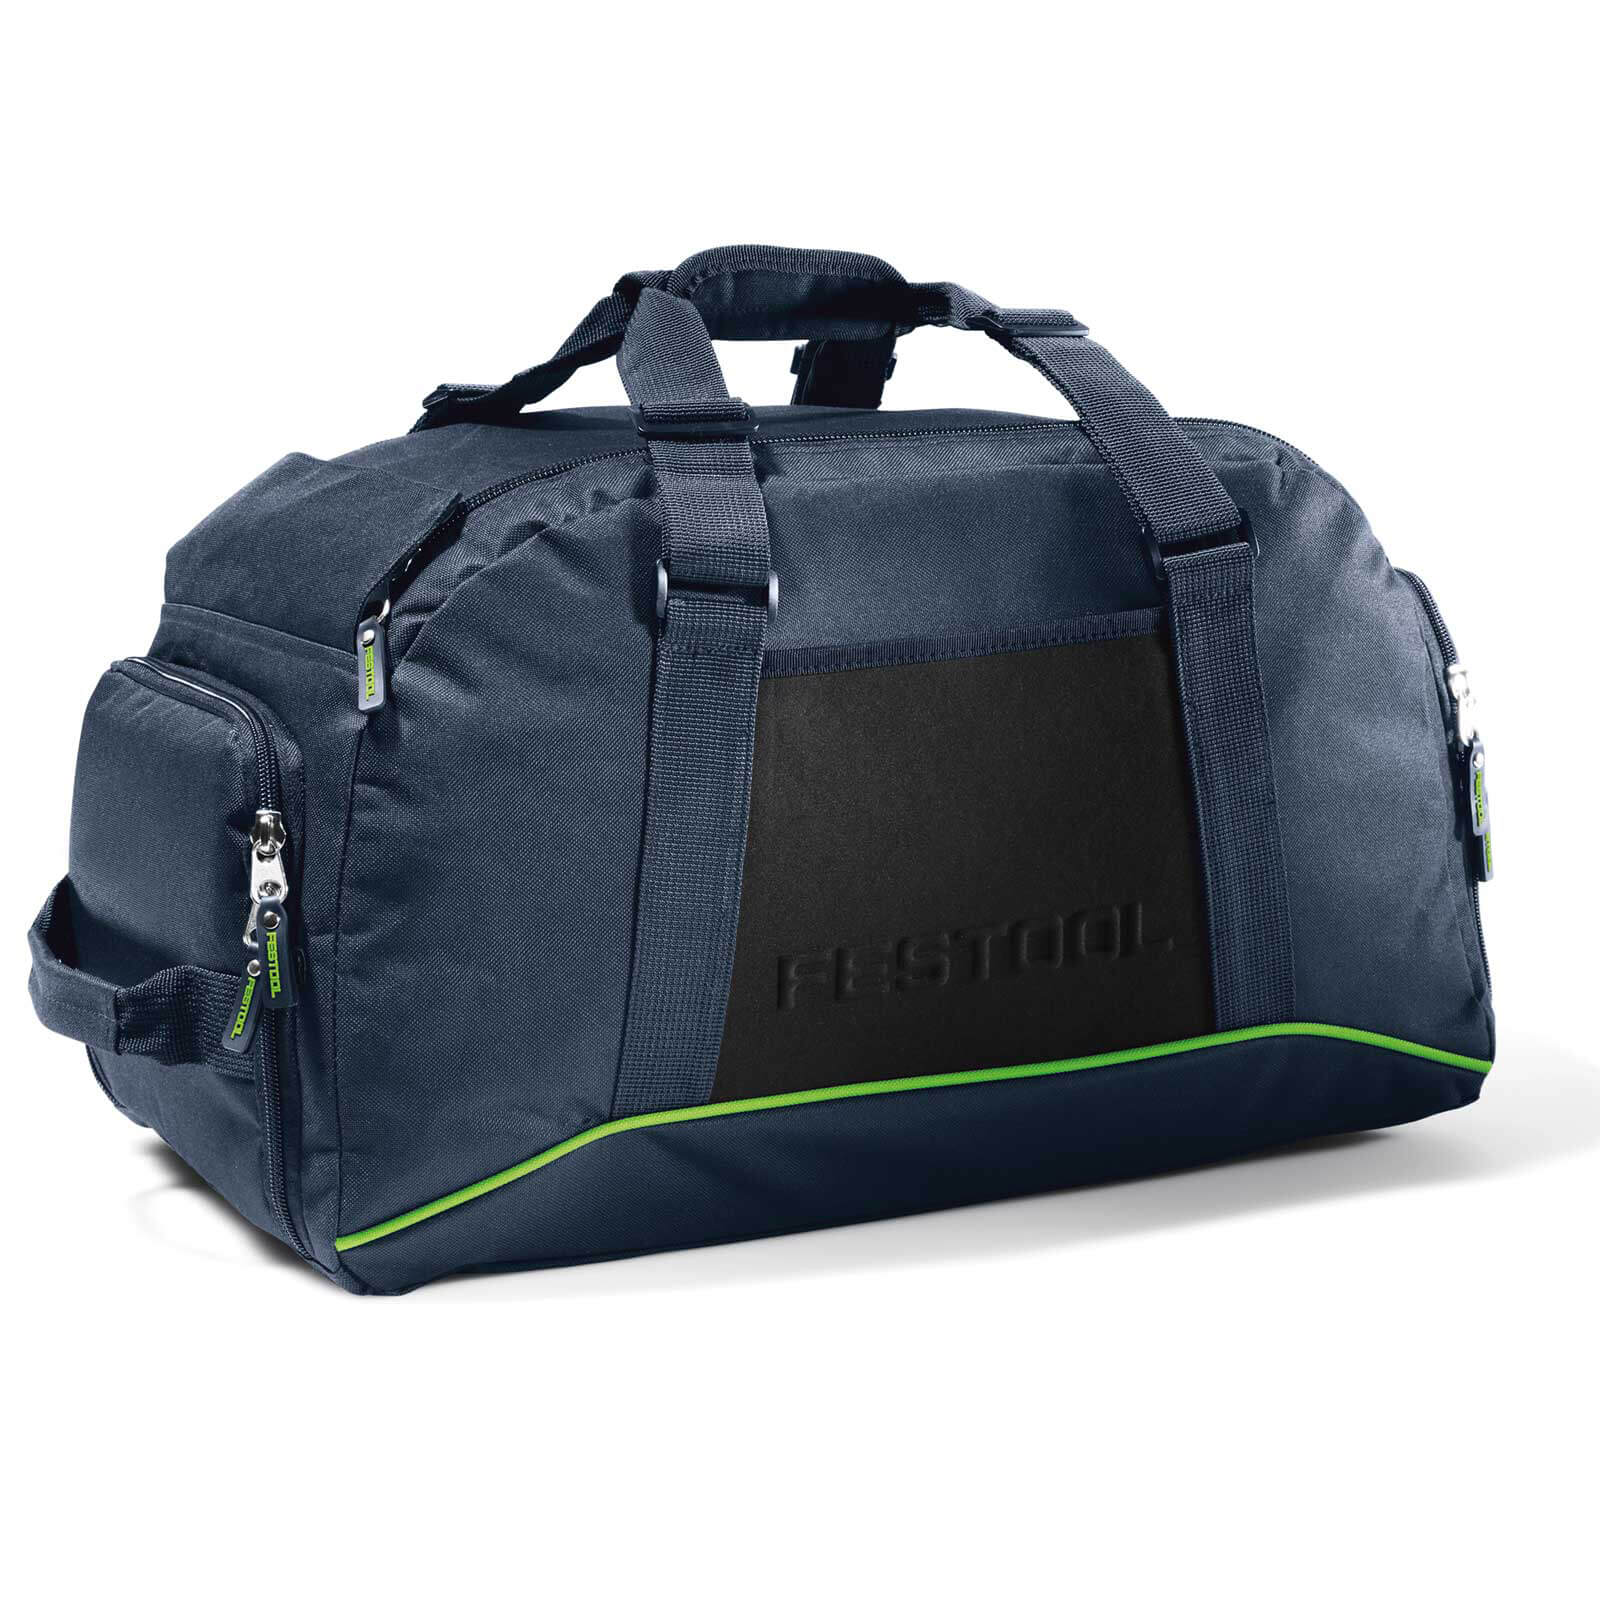 Image of Festool Fan Sports Bag